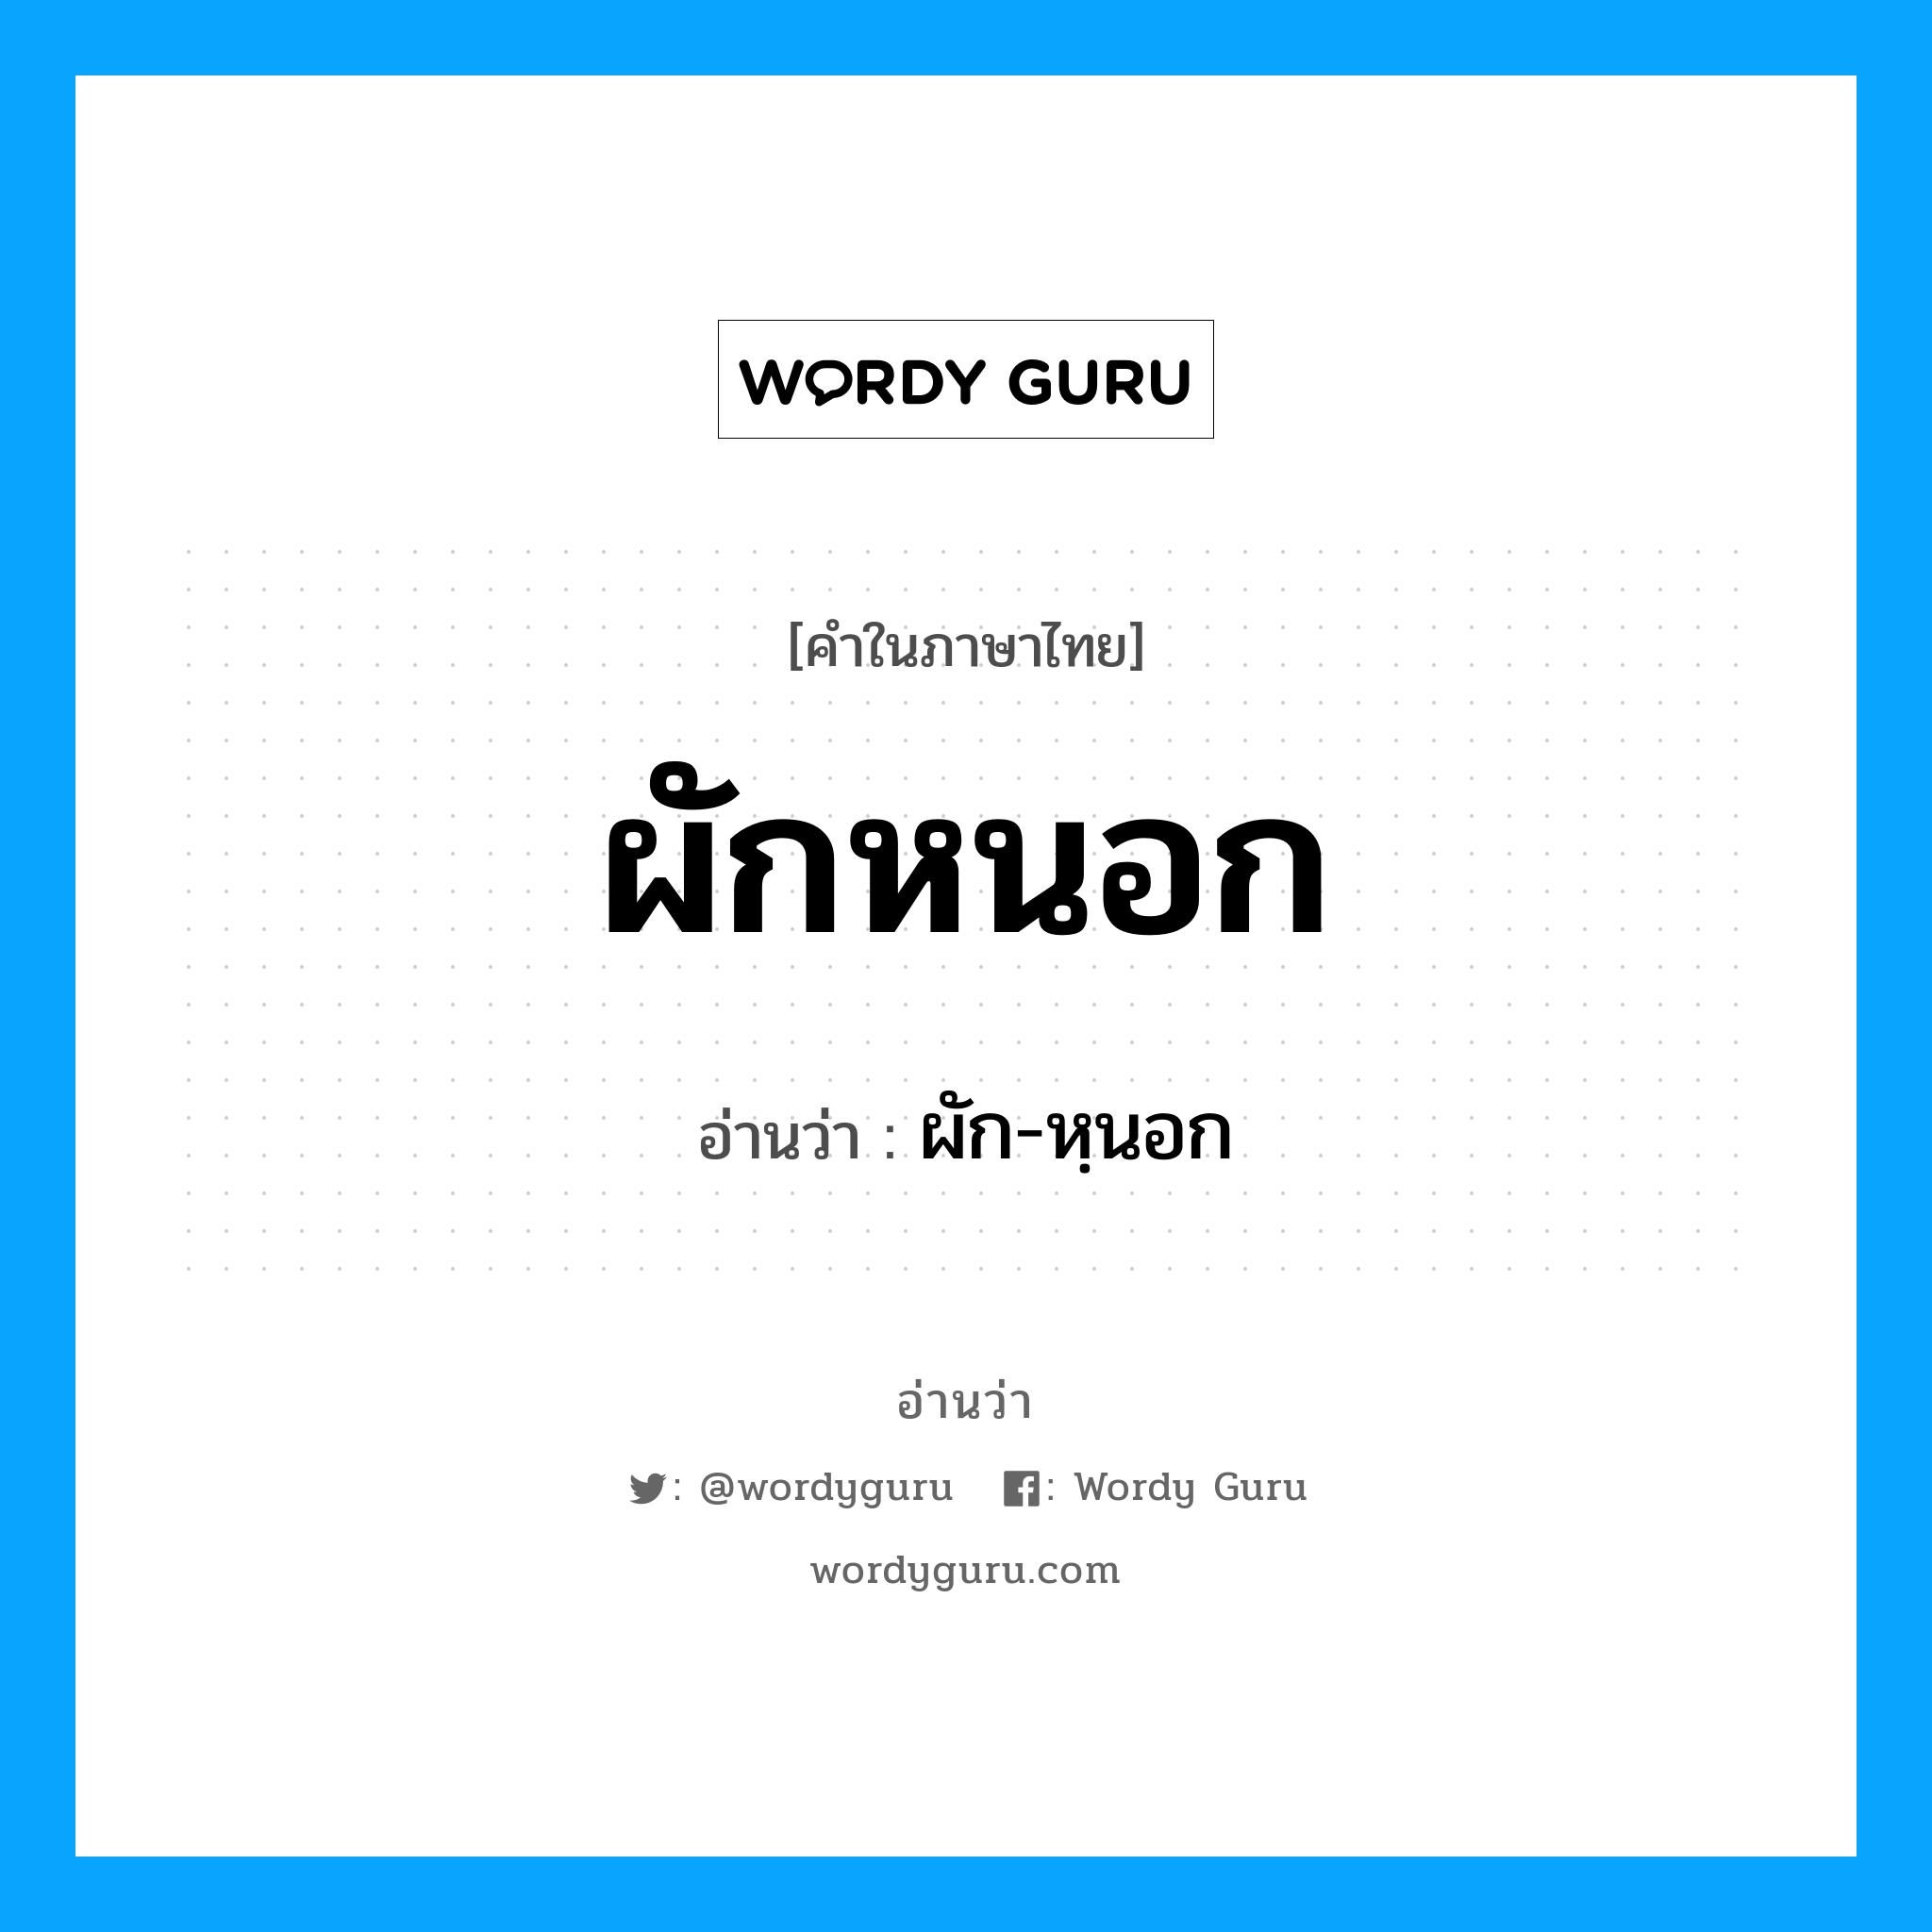 ผัก-หฺนอก เป็นคำอ่านของคำไหน?, คำในภาษาไทย ผัก-หฺนอก อ่านว่า ผักหนอก